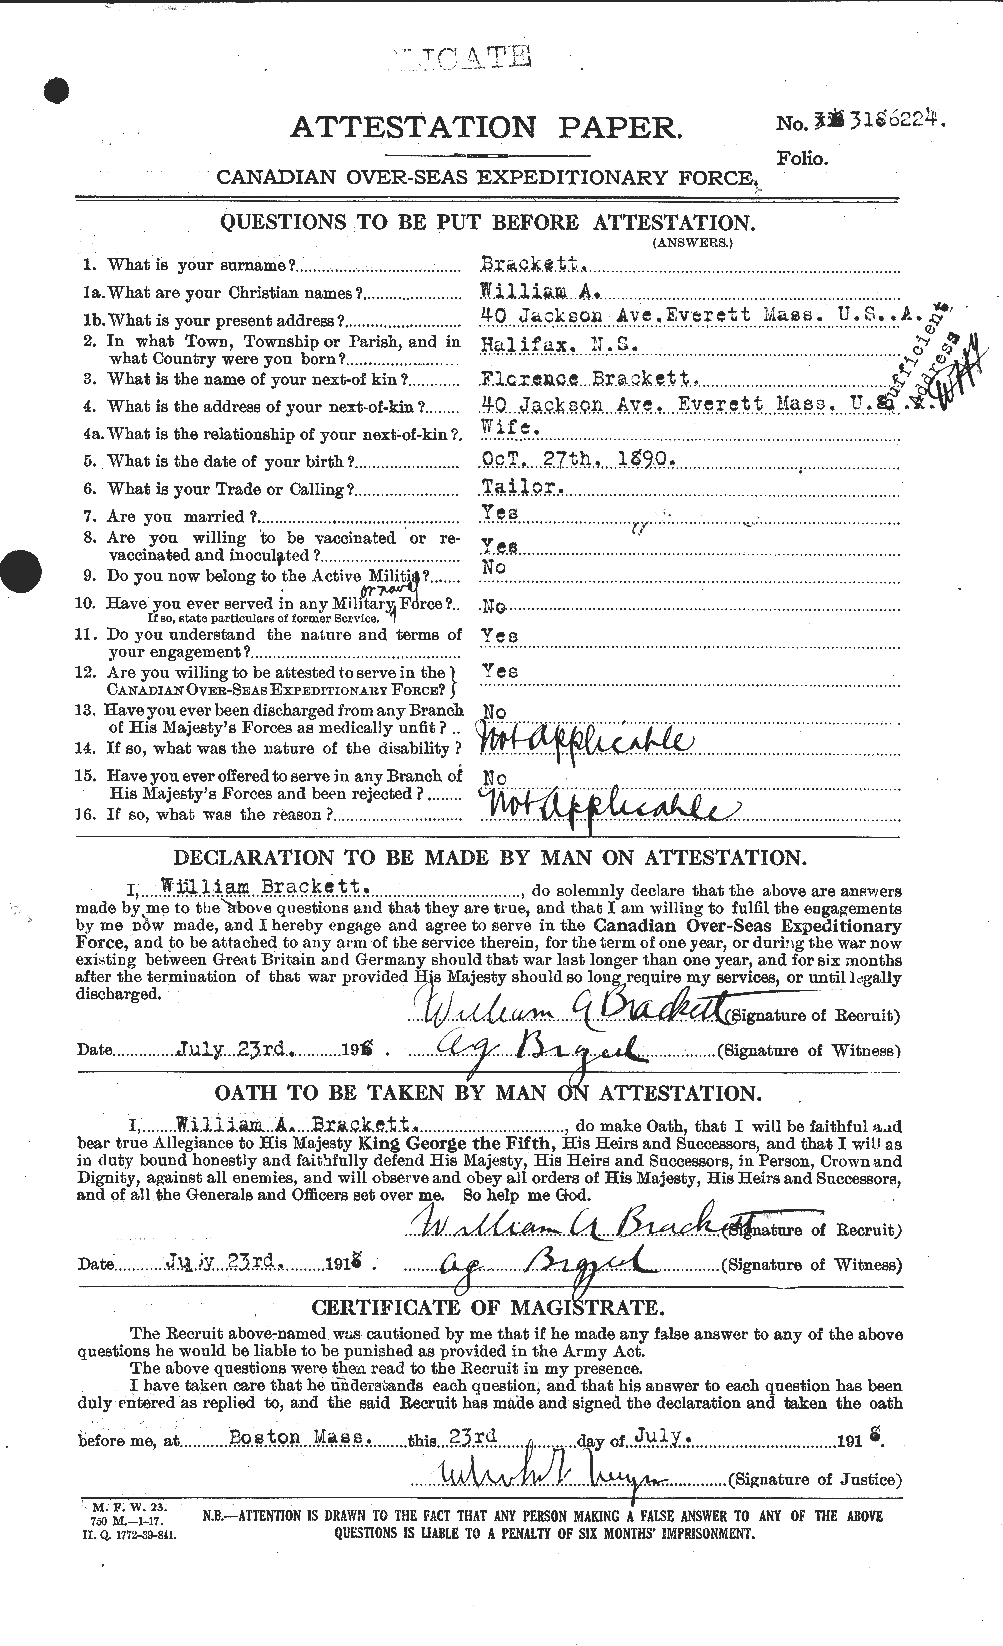 Dossiers du Personnel de la Première Guerre mondiale - CEC 254743a